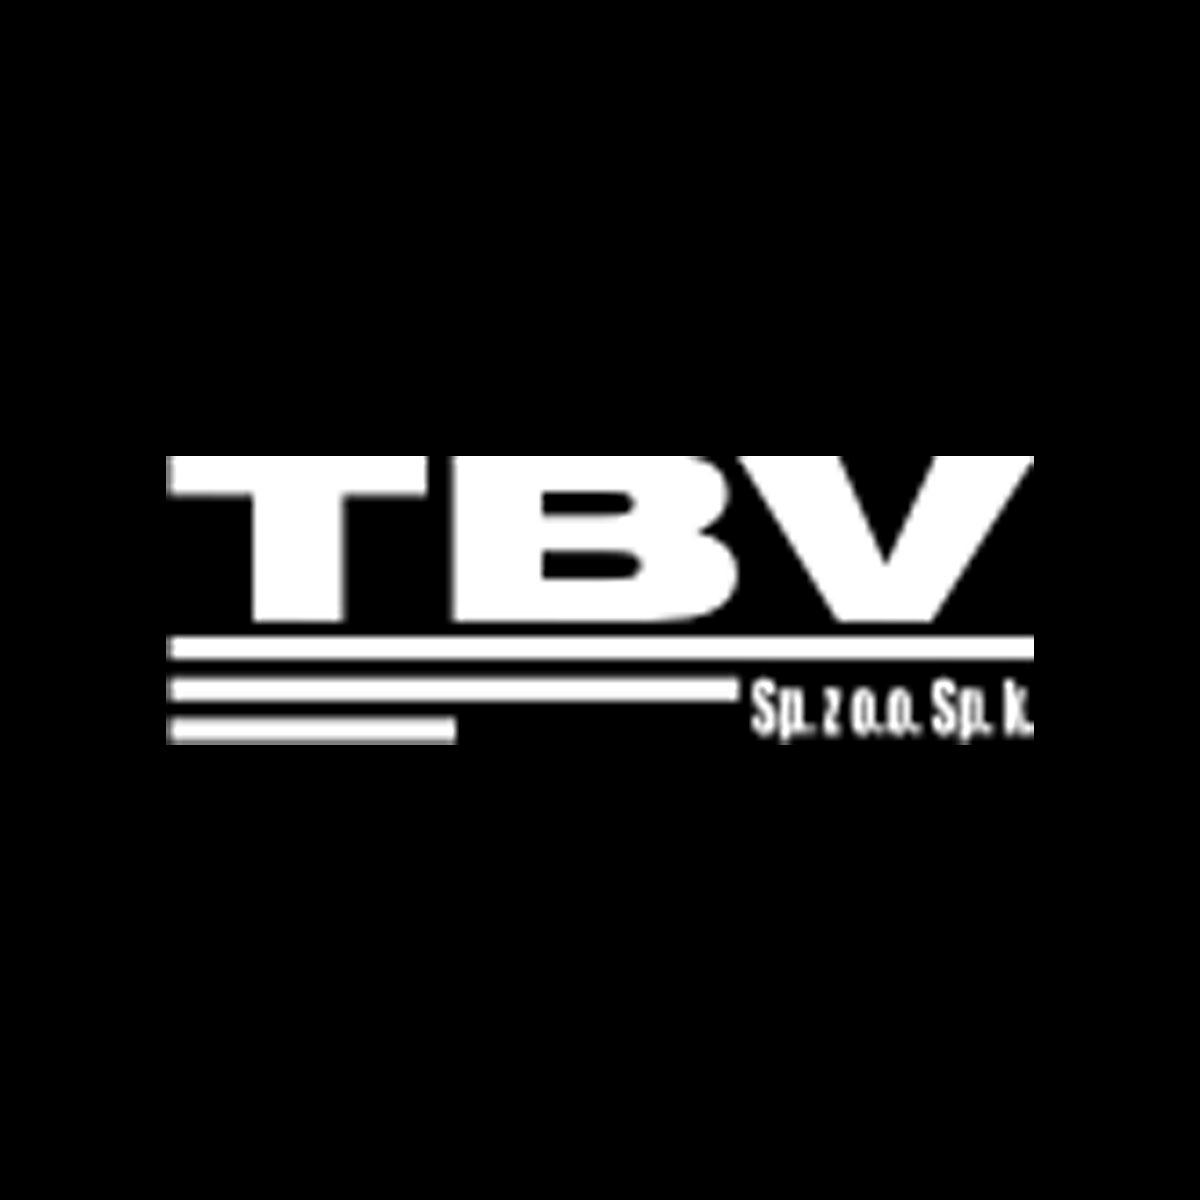 Wybierz apartamenty na sprzedaż lublin od TBV Sp. z o.o., lubelskie